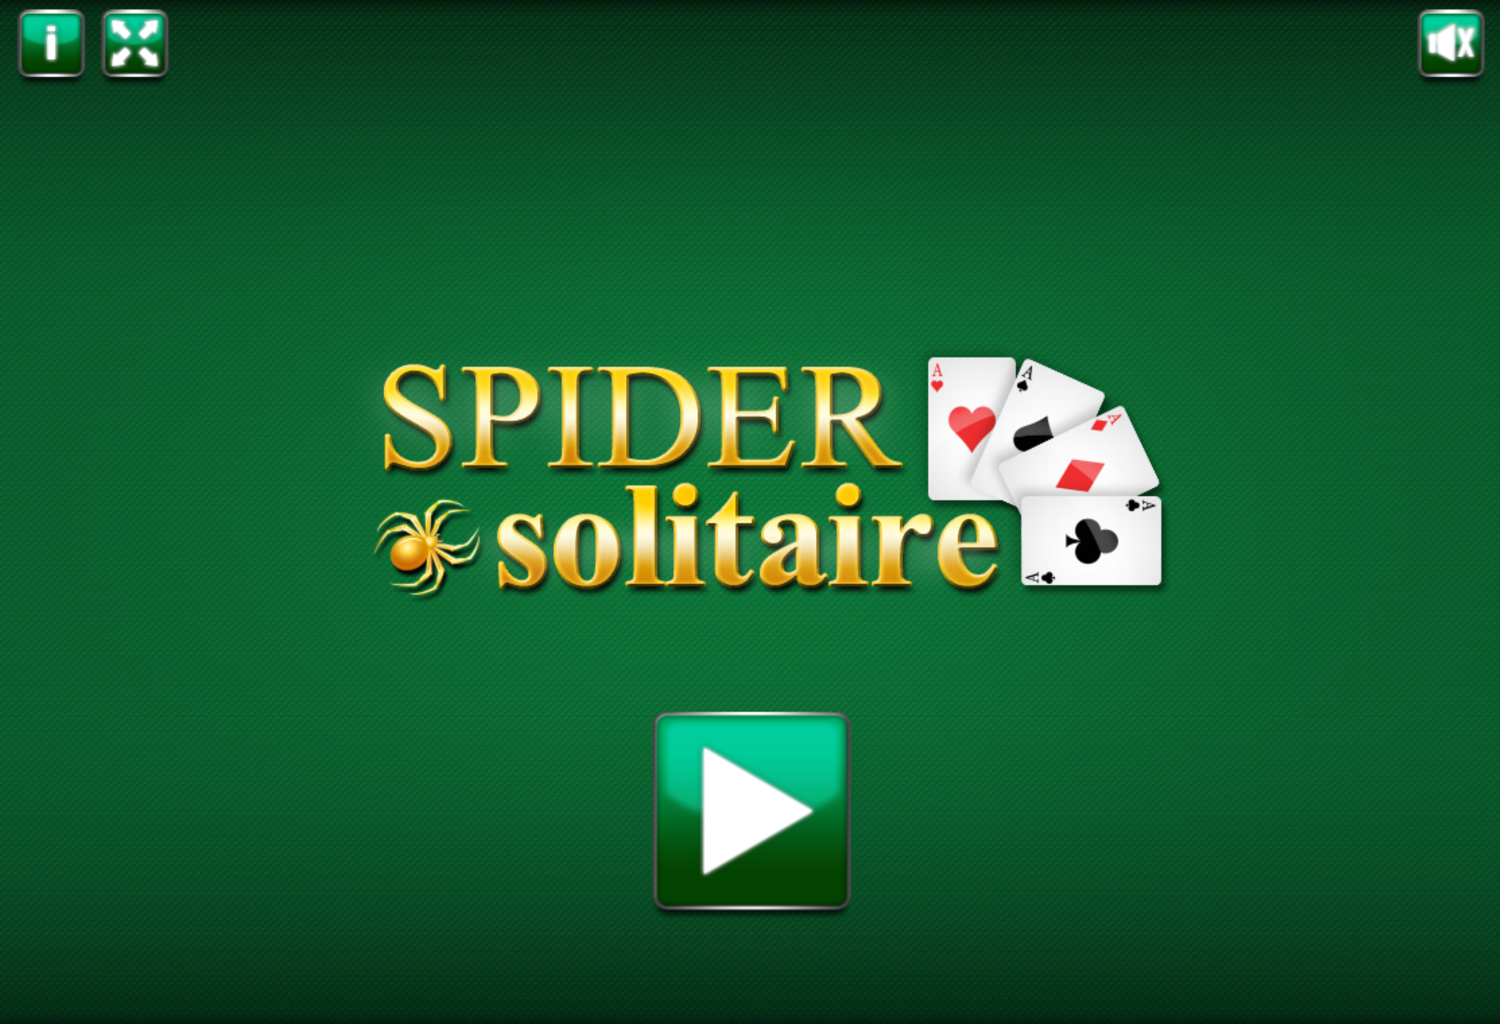 Spider Solitaire Start Screen Screenshot.